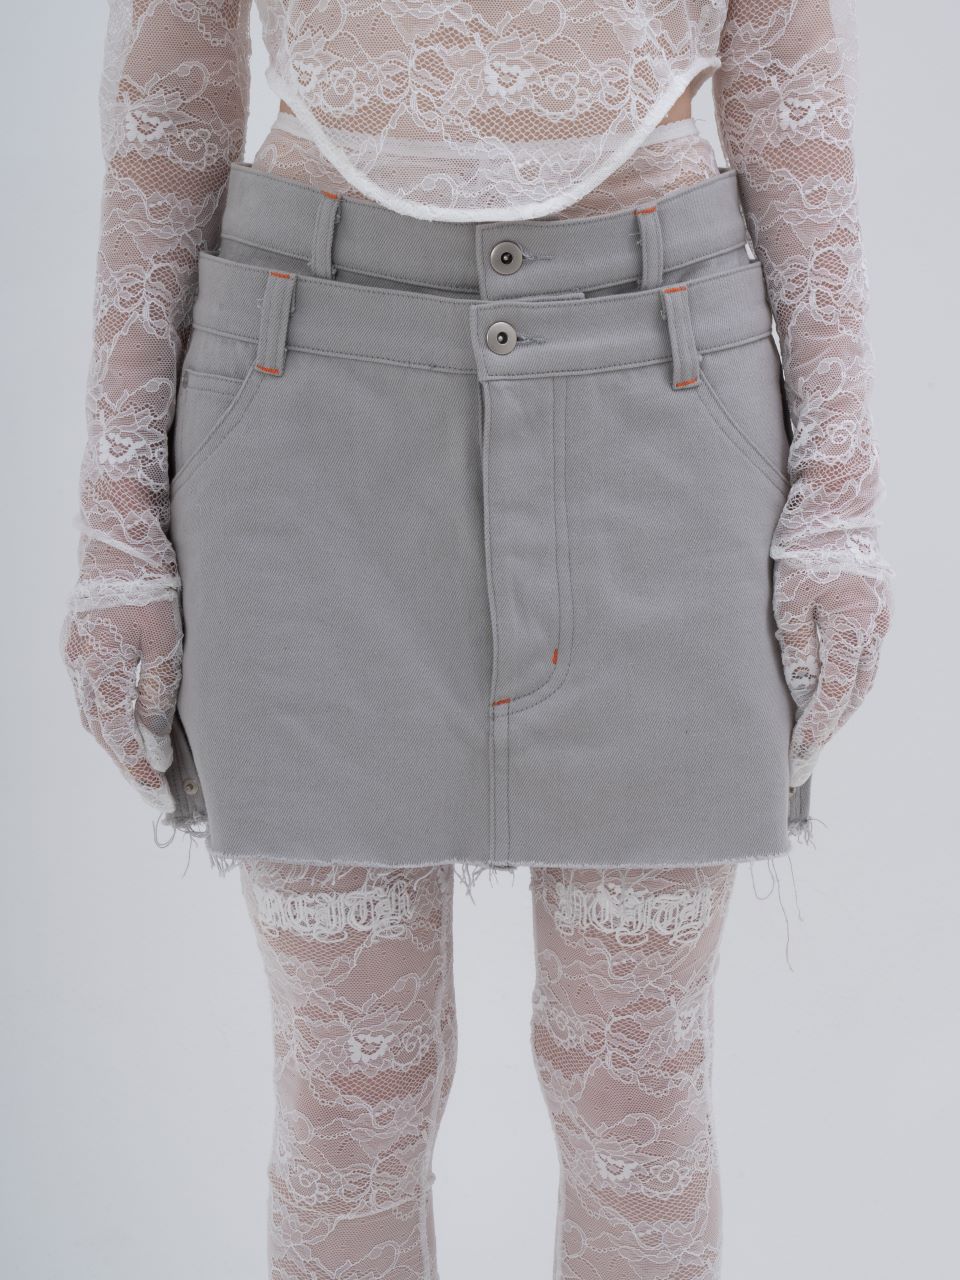 Denim Skirt With Legcover/neith. - ミニスカート